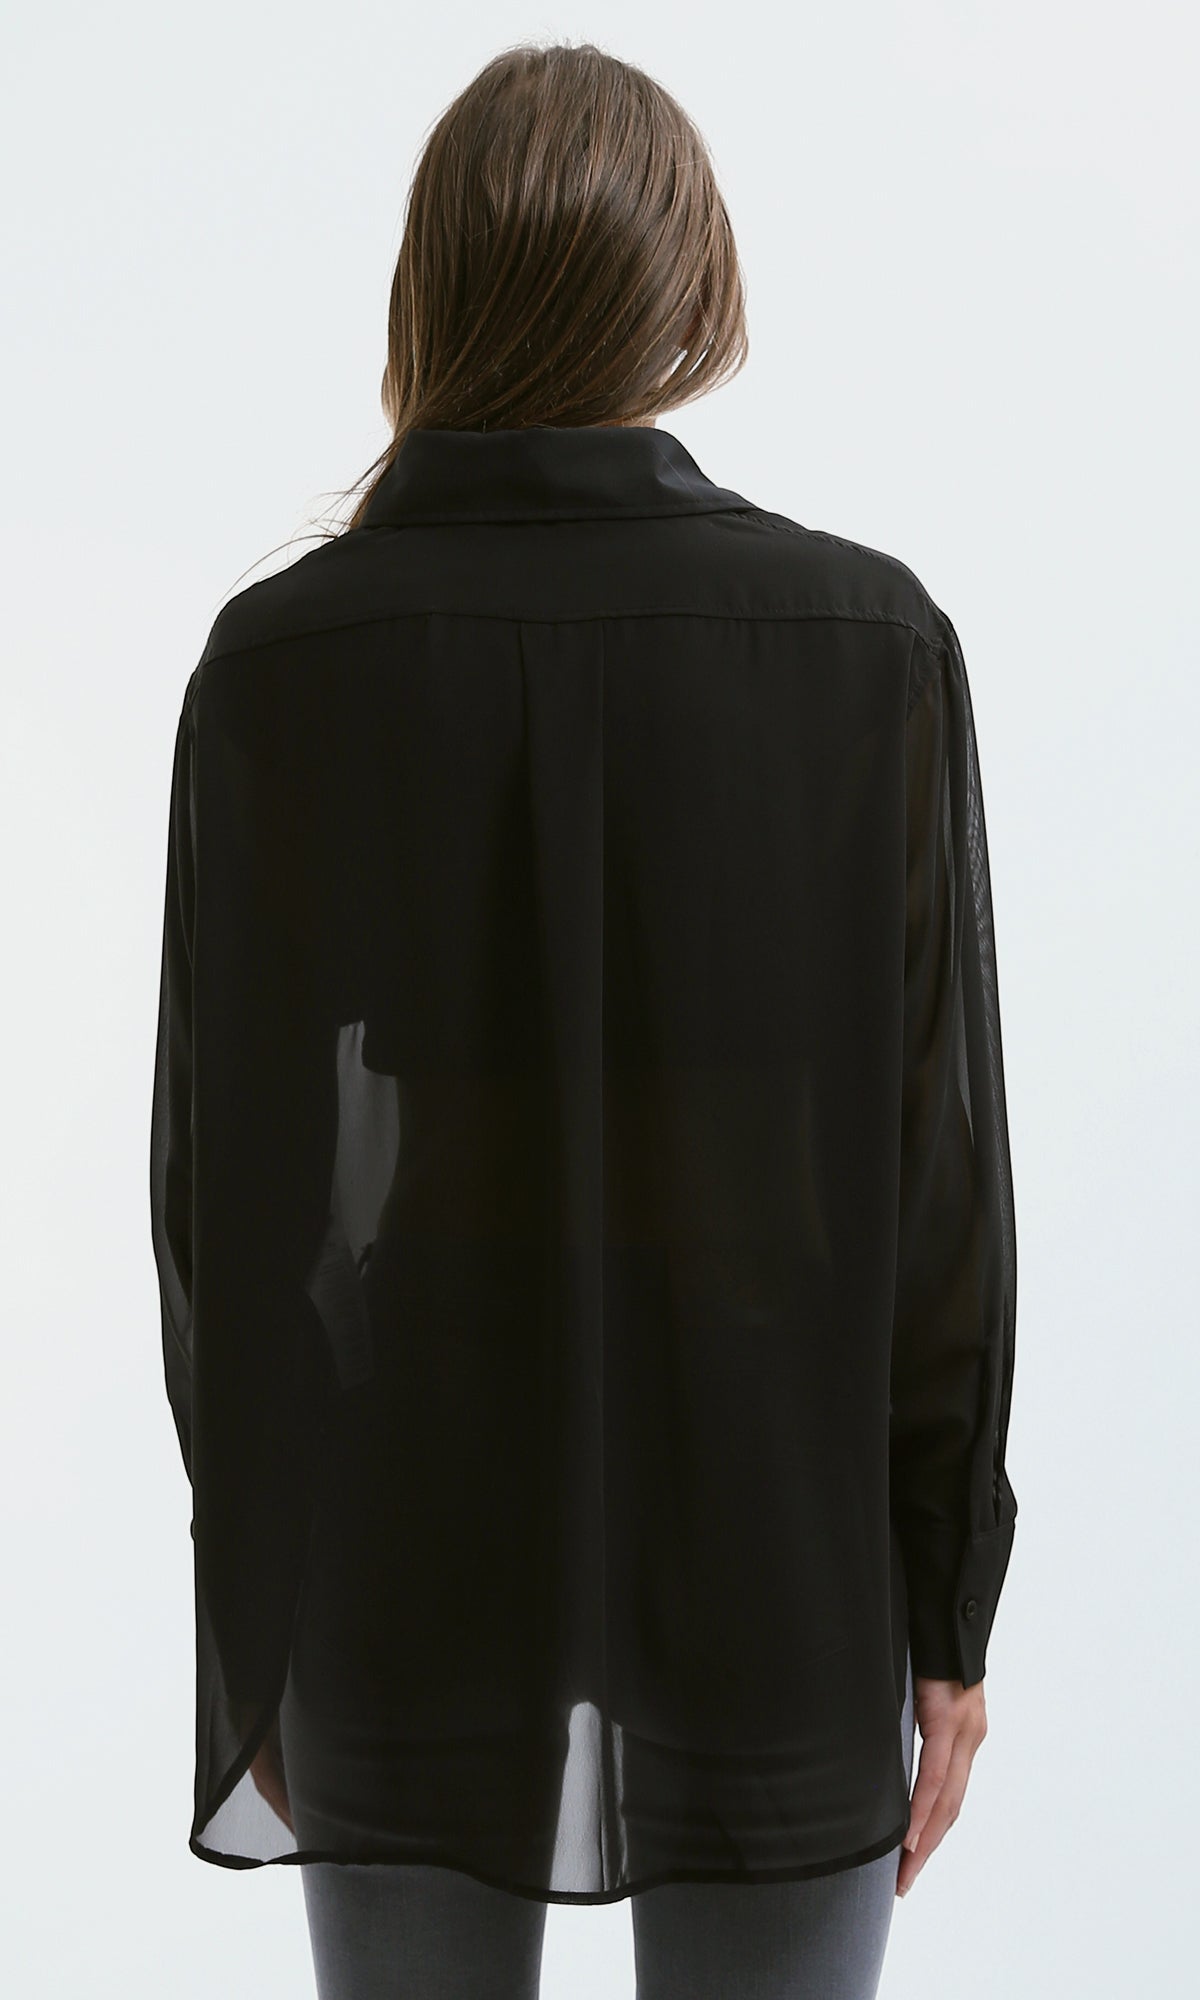 O178815 Summer Black Sheer Shirt With Front Pockets